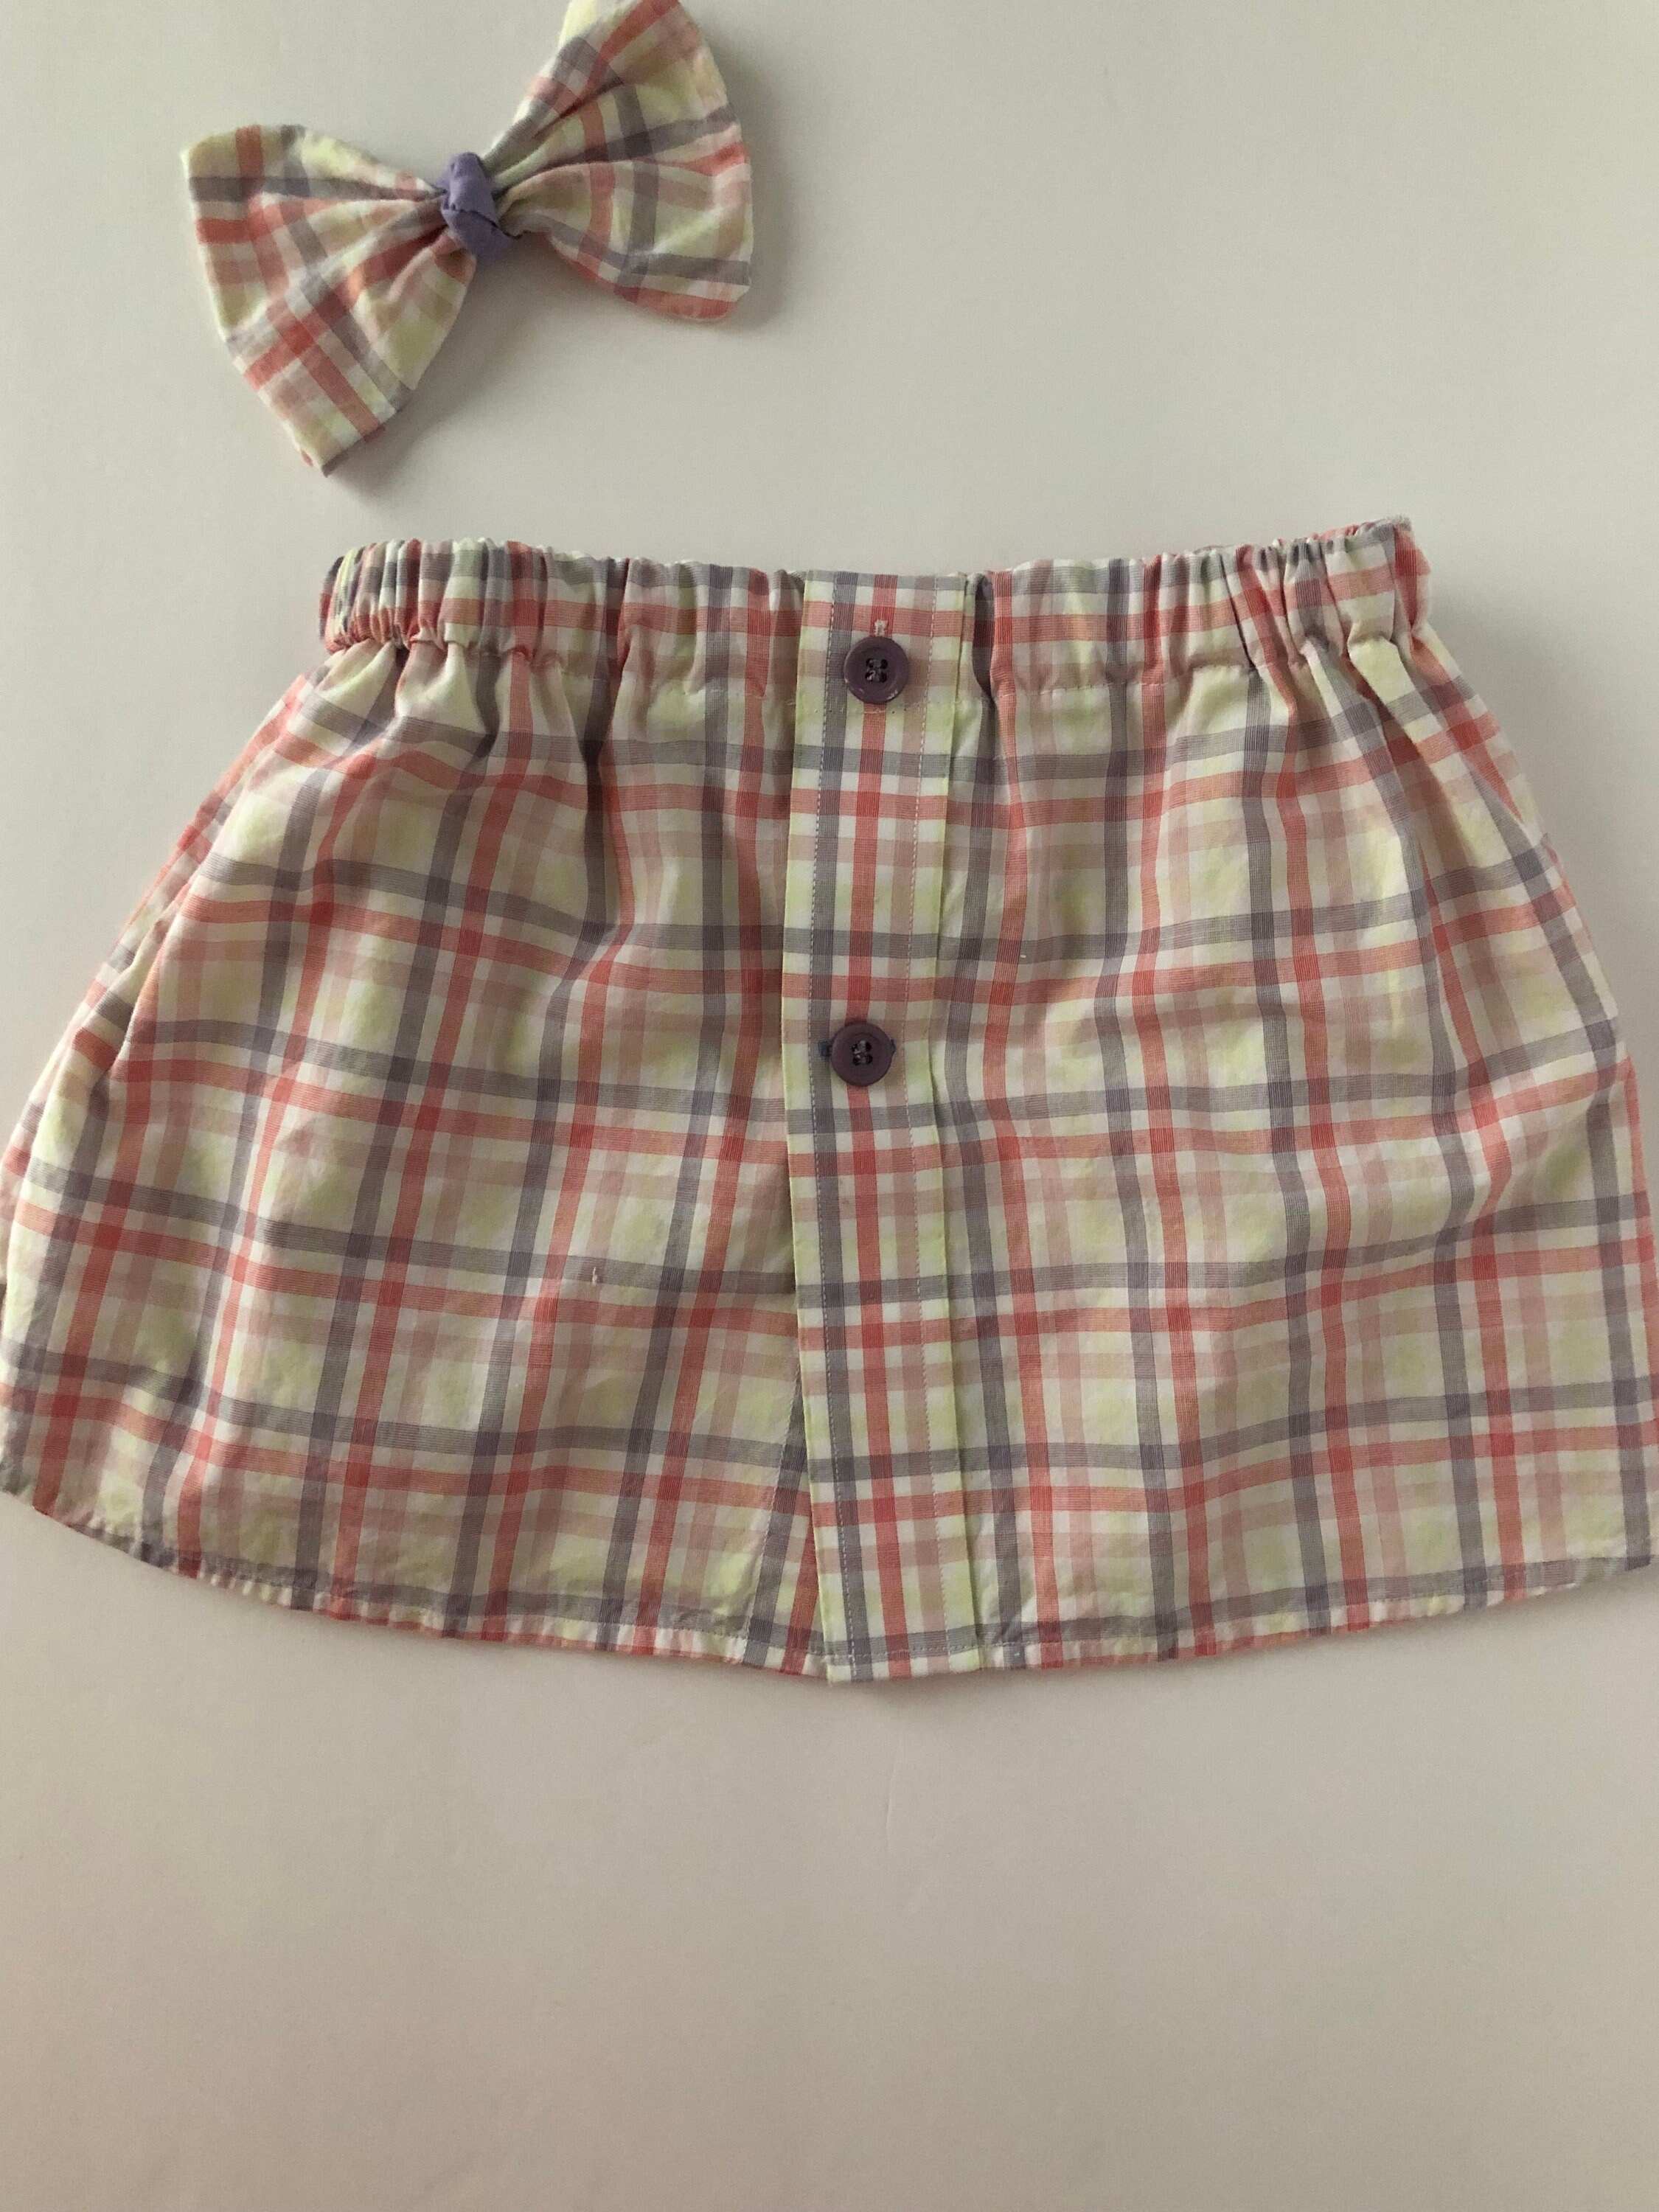 Little Girls Skirt size 5T. Girls dressup skirts for fun | Etsy